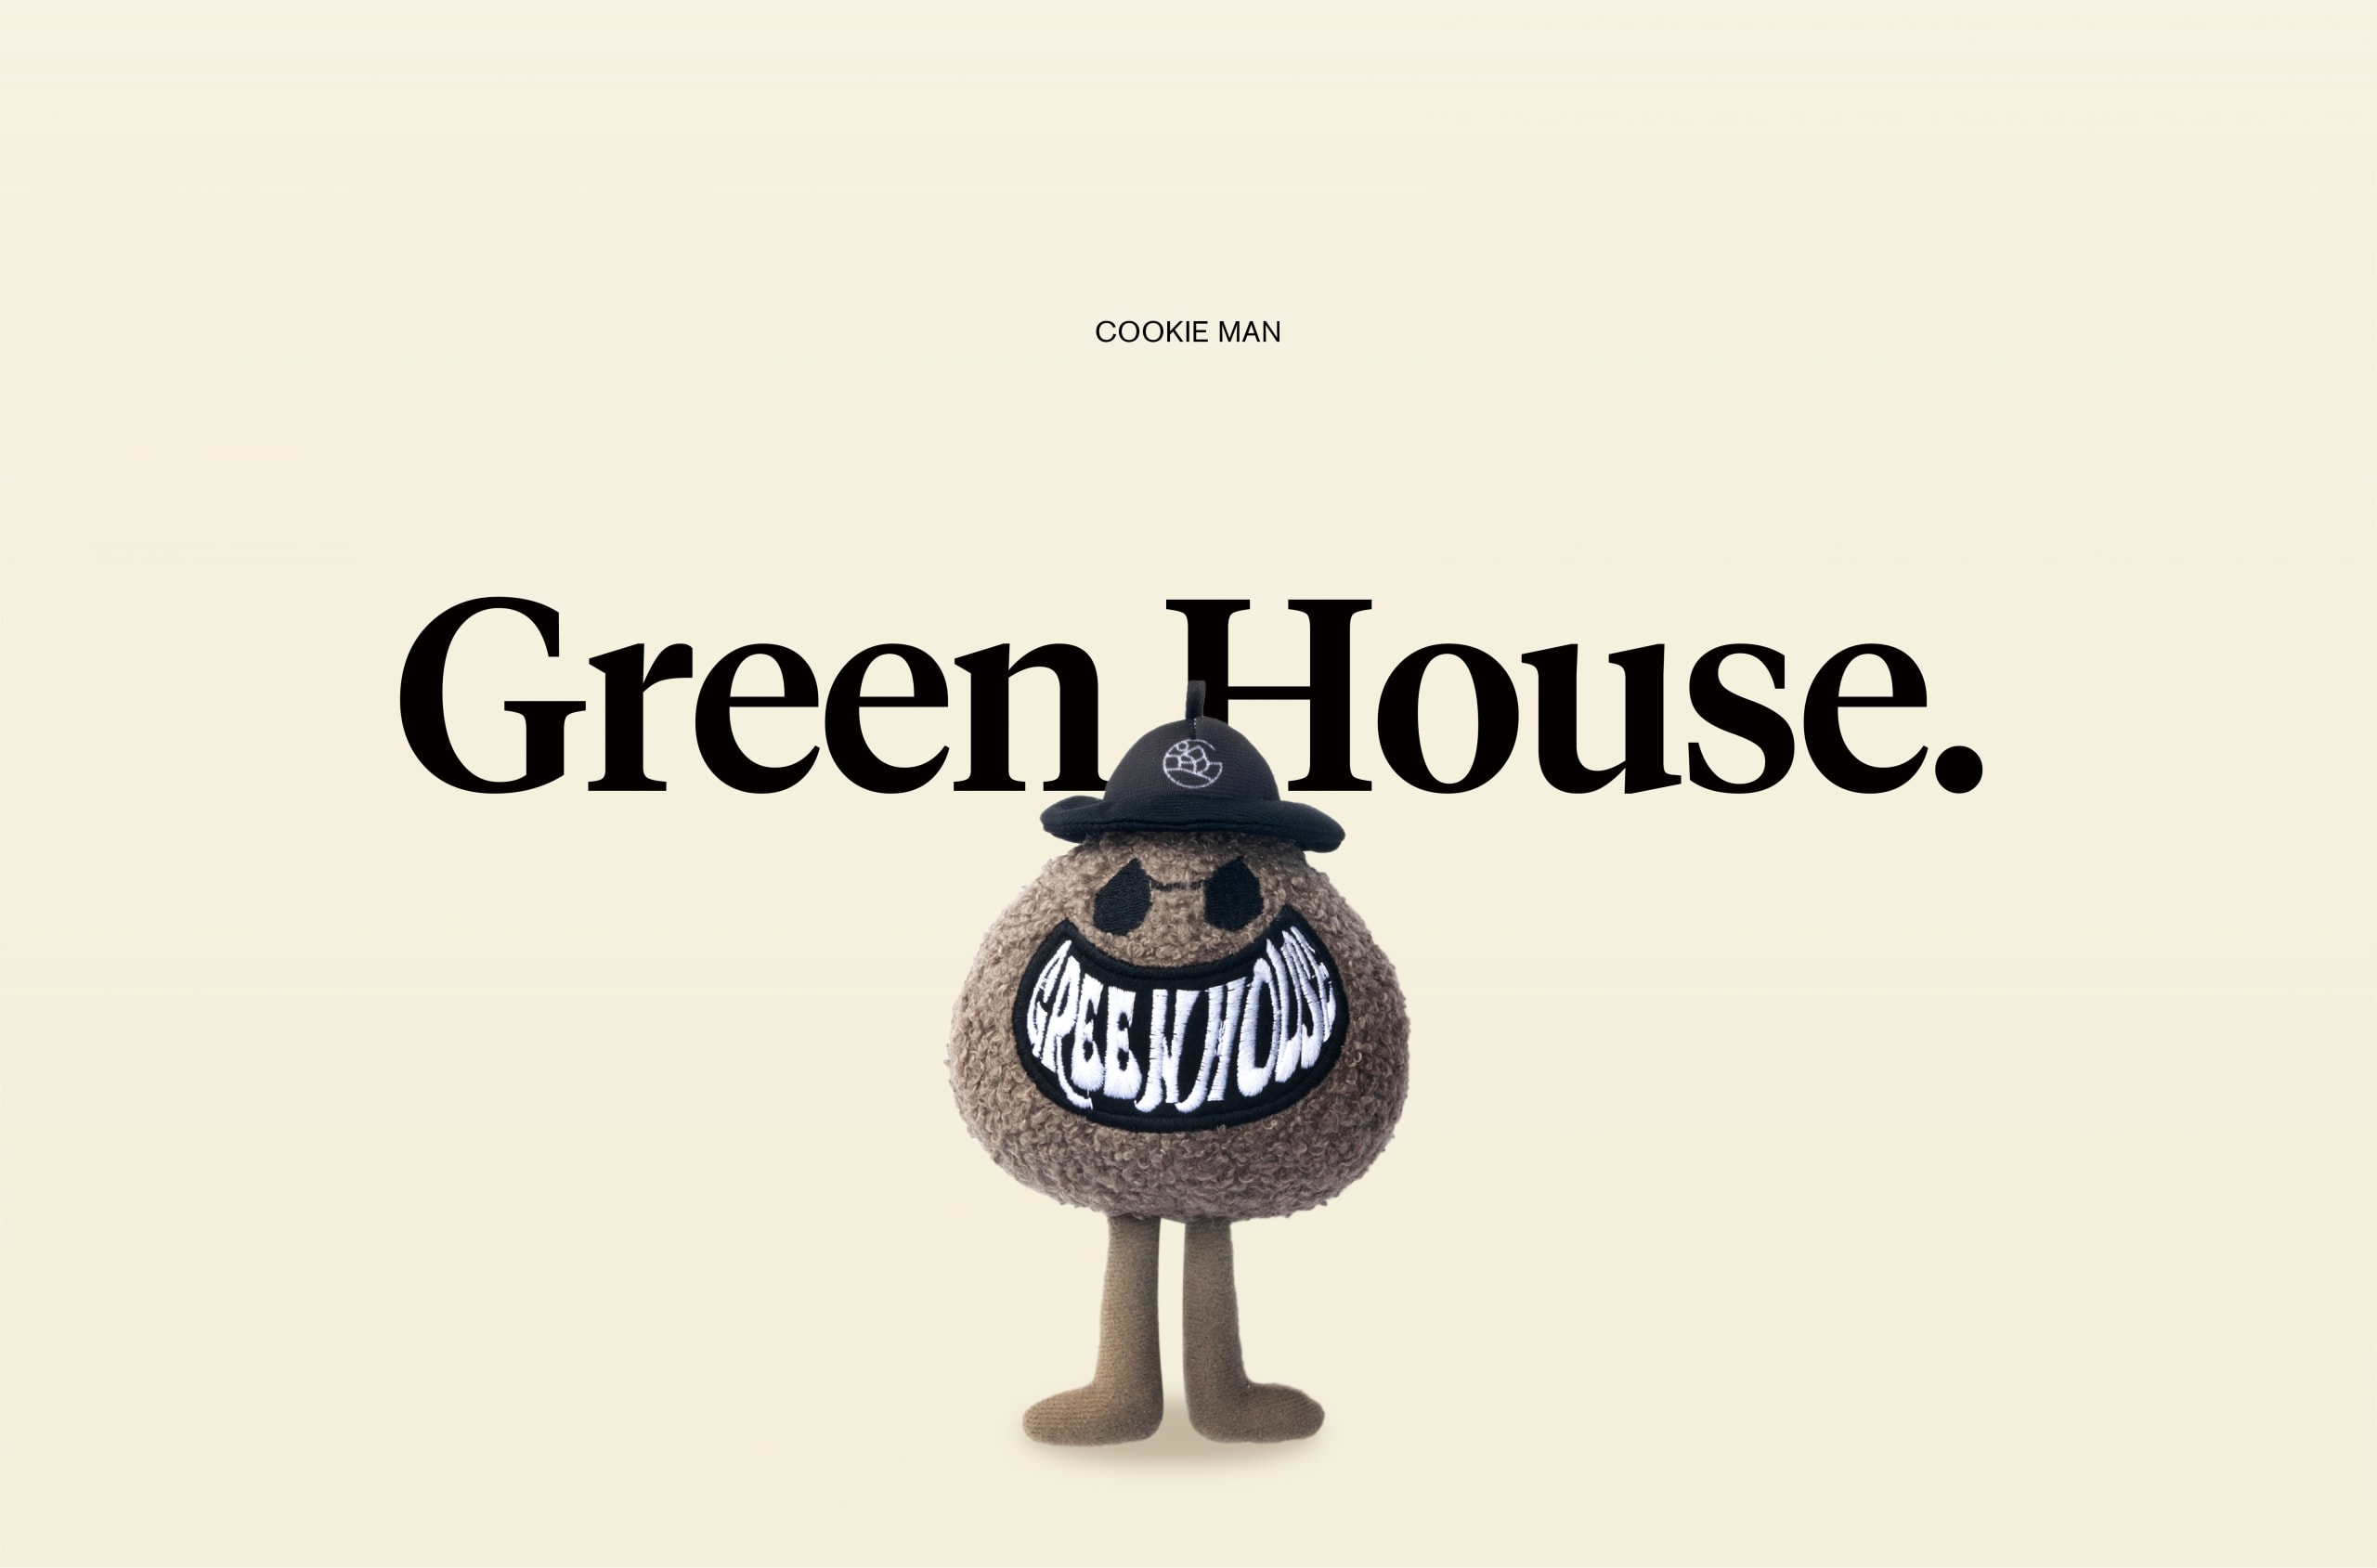 创意单位 GREEN HOUSE 推出全新 COOKIE MAN 公仔